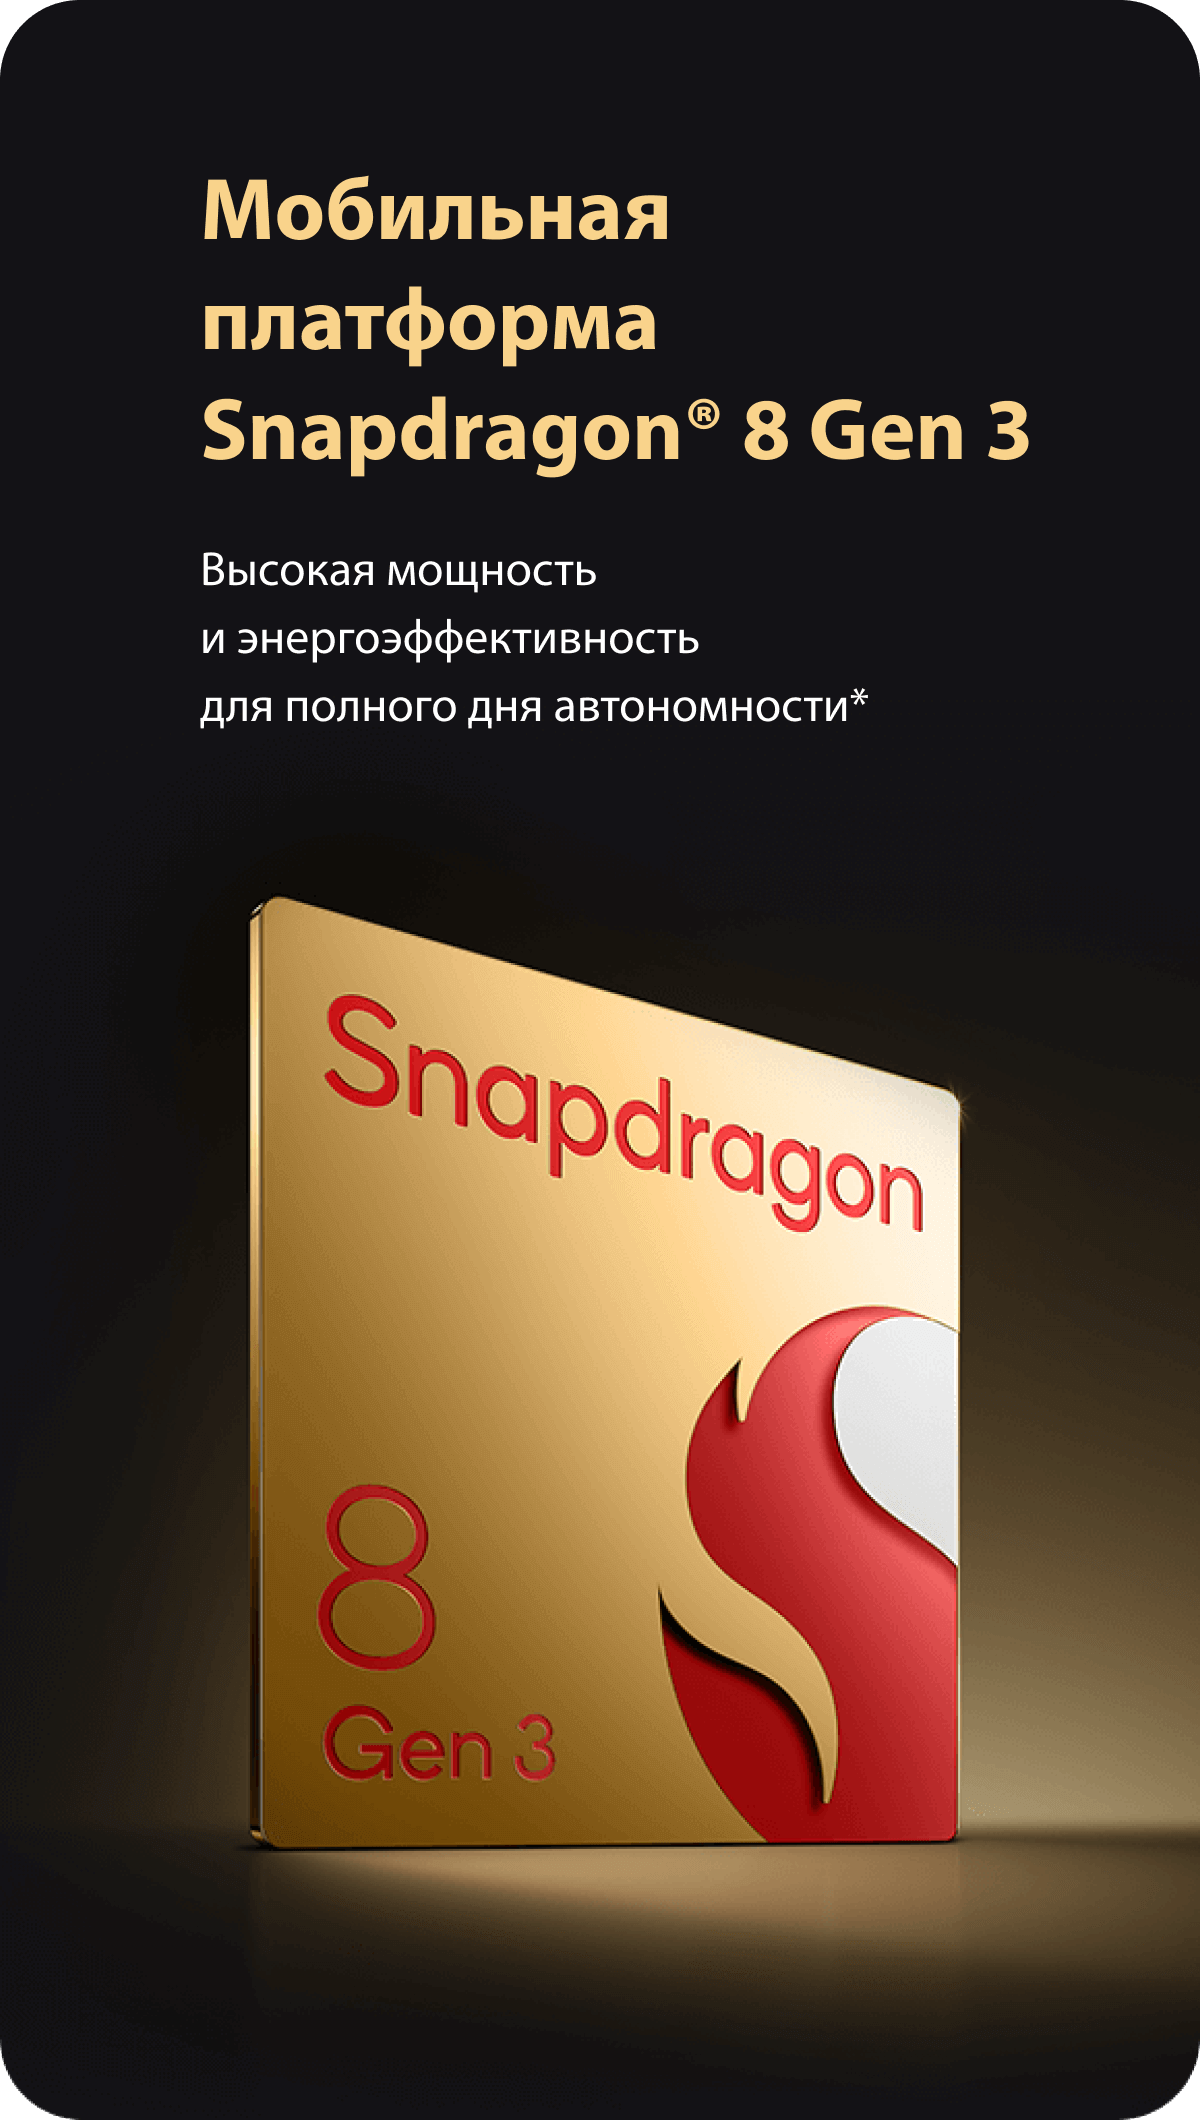 Мобильная платформа Snapdragon® 8 Gen 3. Высокая мощность и энергоэффективность для полного дня автономности*